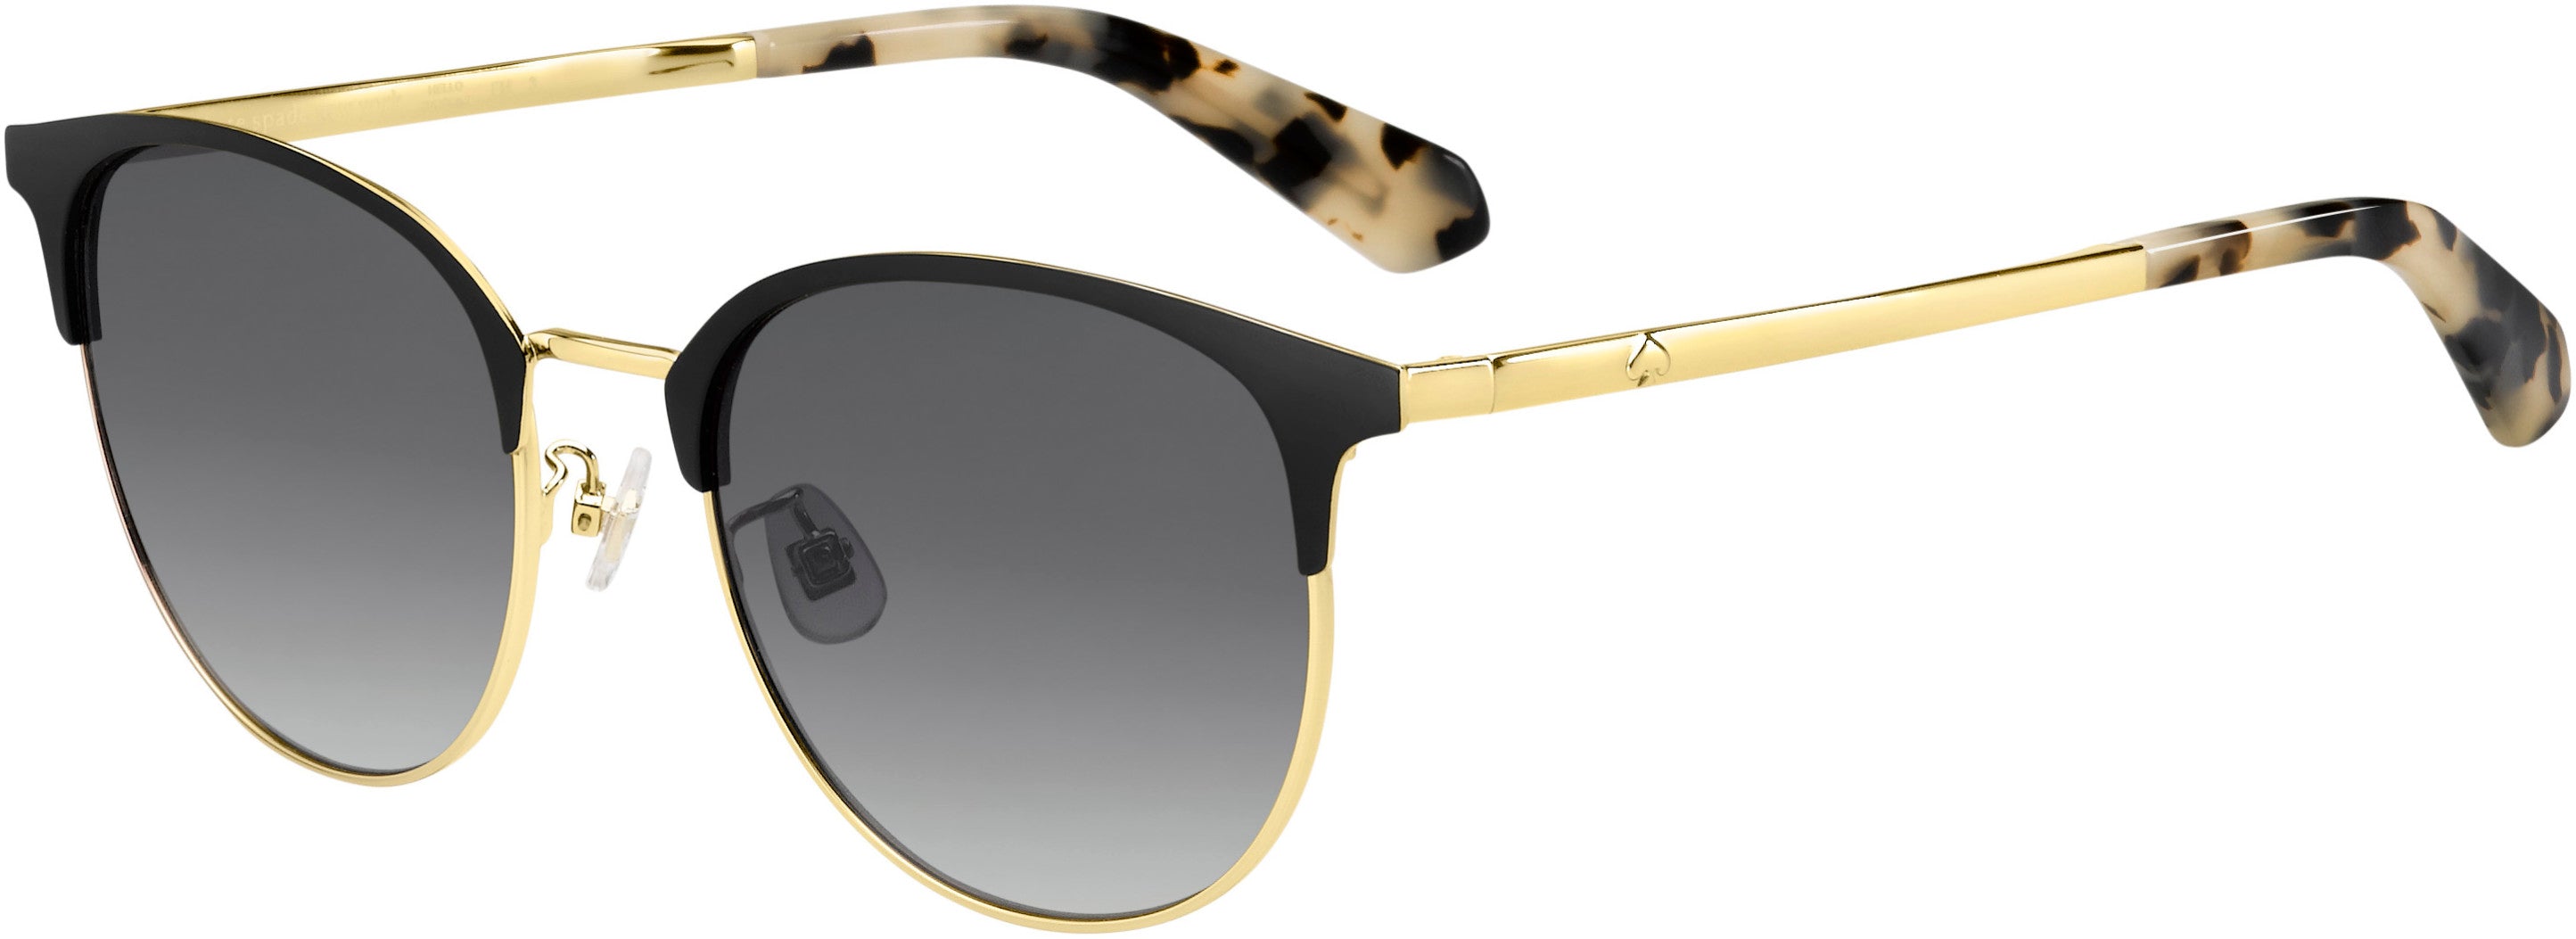 Kate Spade Delacey/F/S Browline Sunglasses 02M2-02M2  Black Gold (9O Dark Gray Gradient)